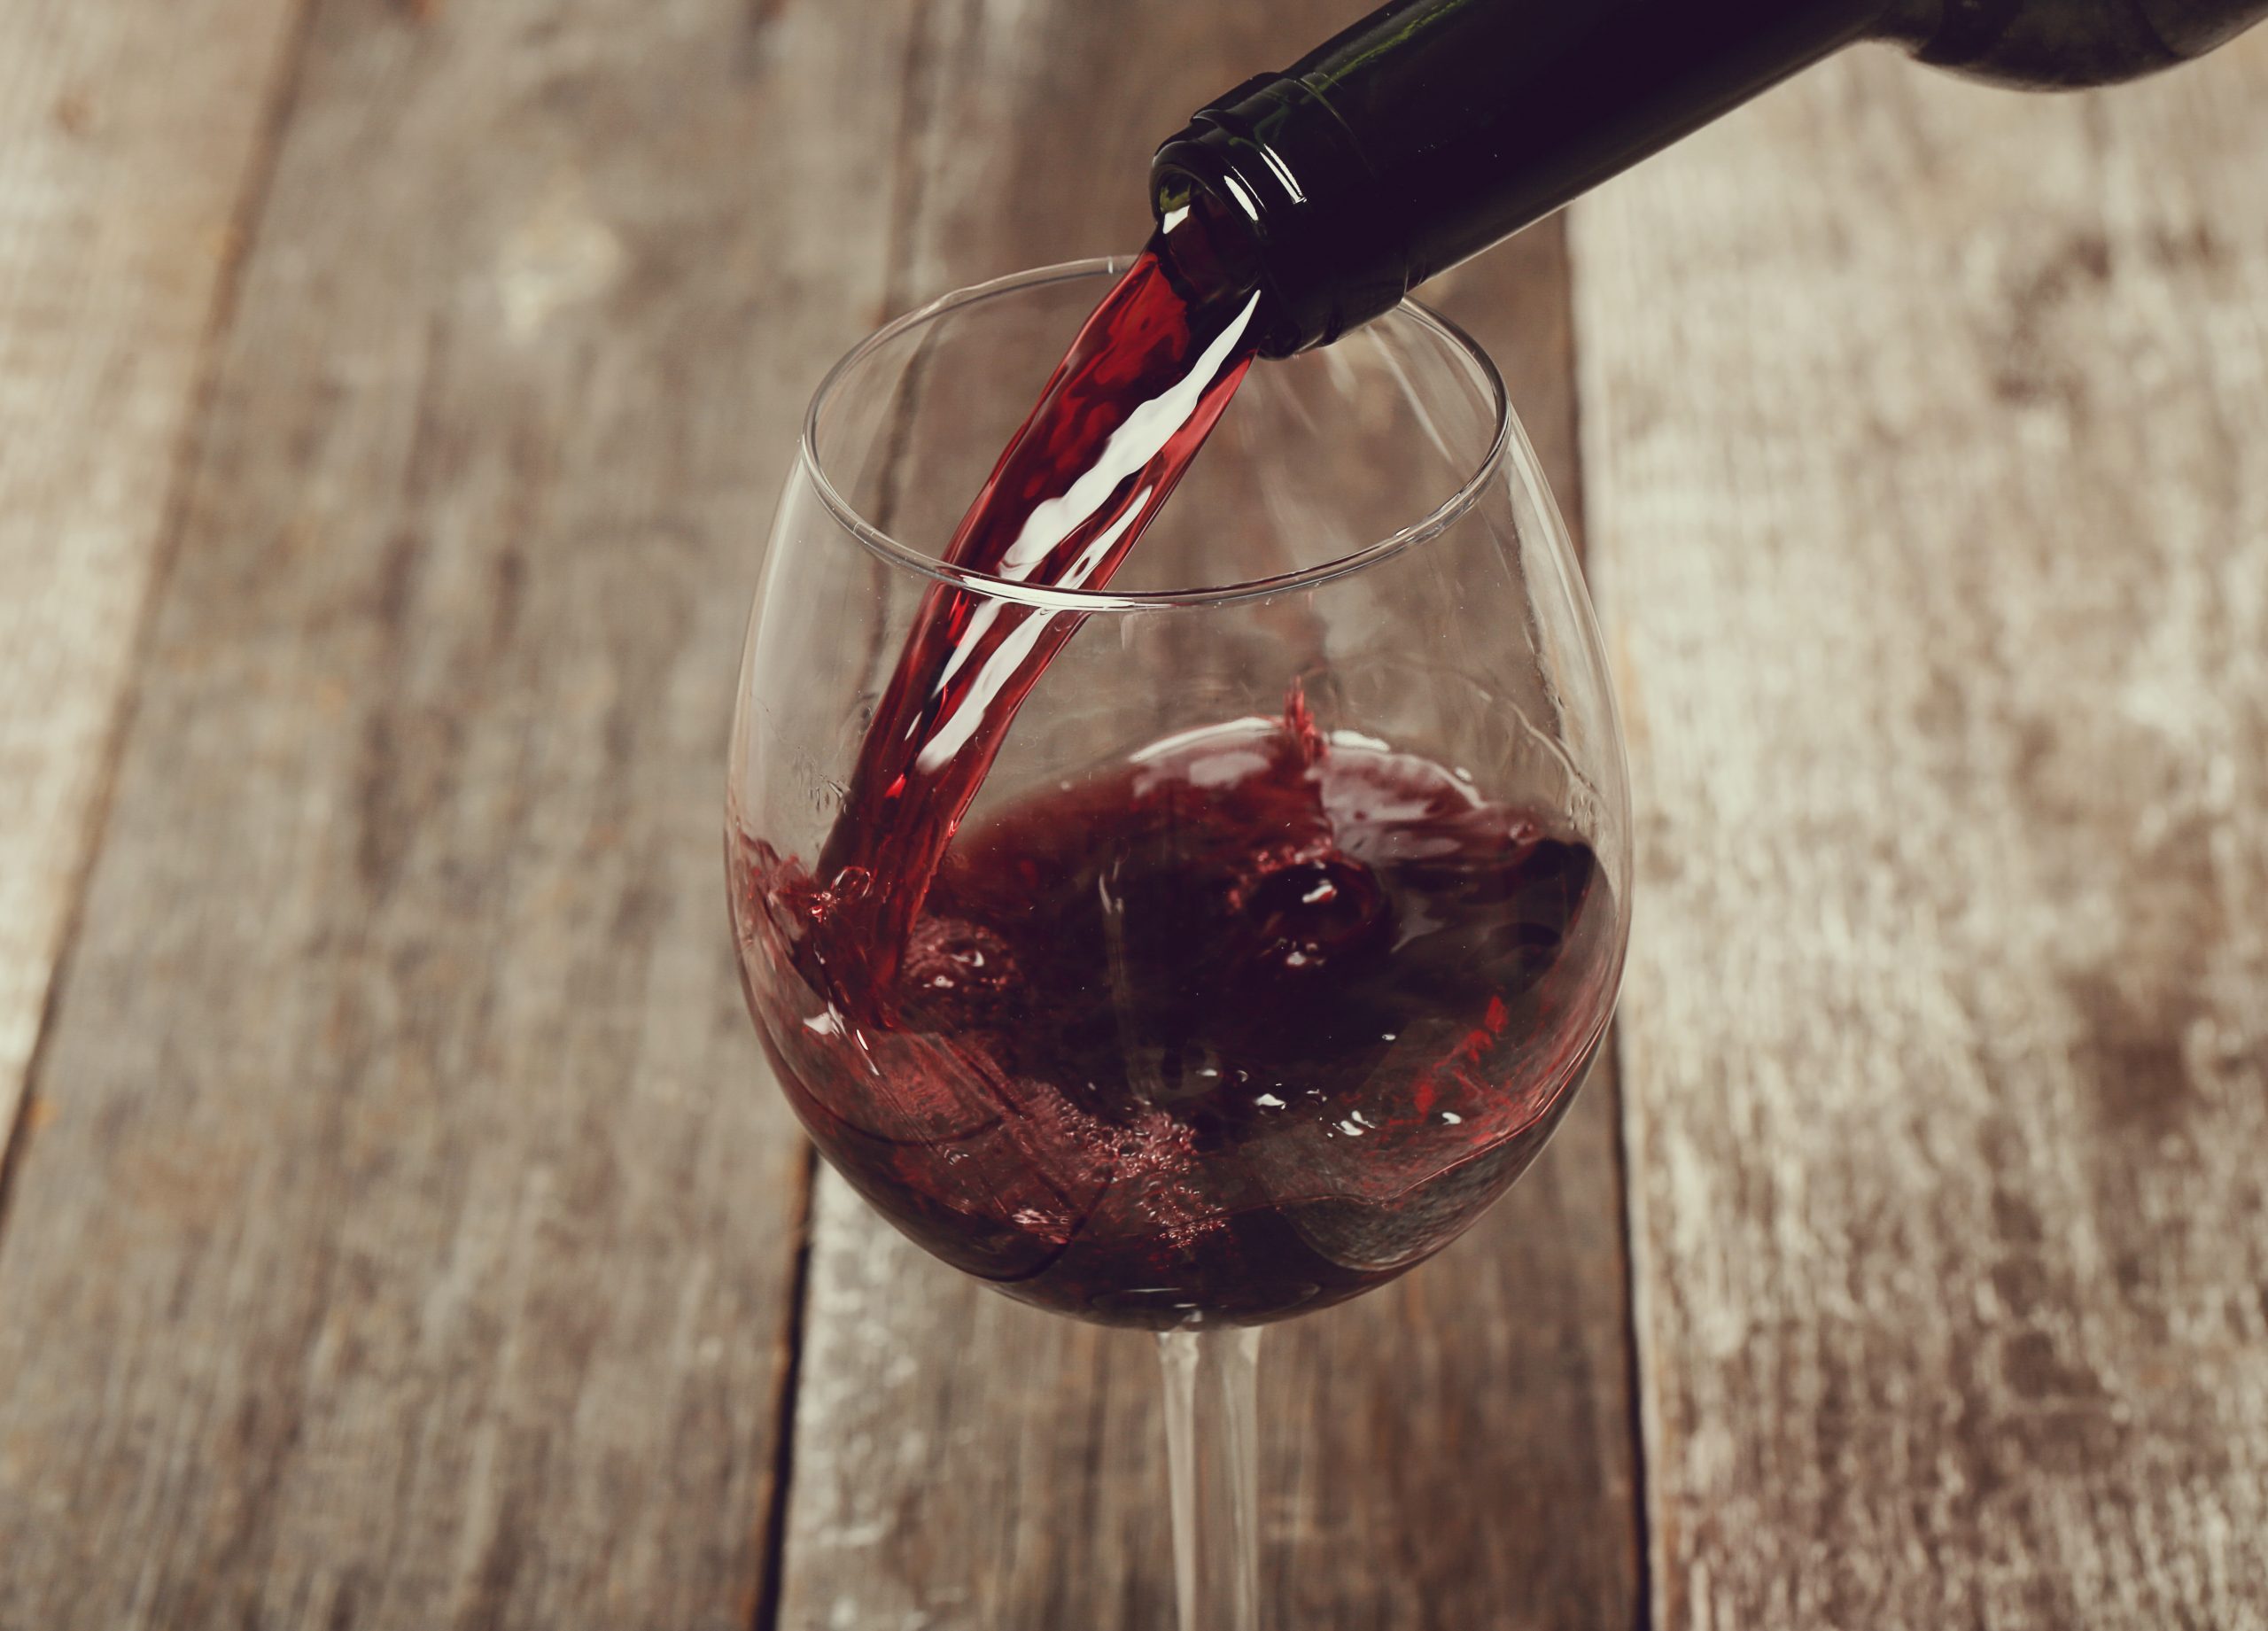 Ácido tânico, presente no vinho tinto, pode ajudar a inibir infecção por covid-19